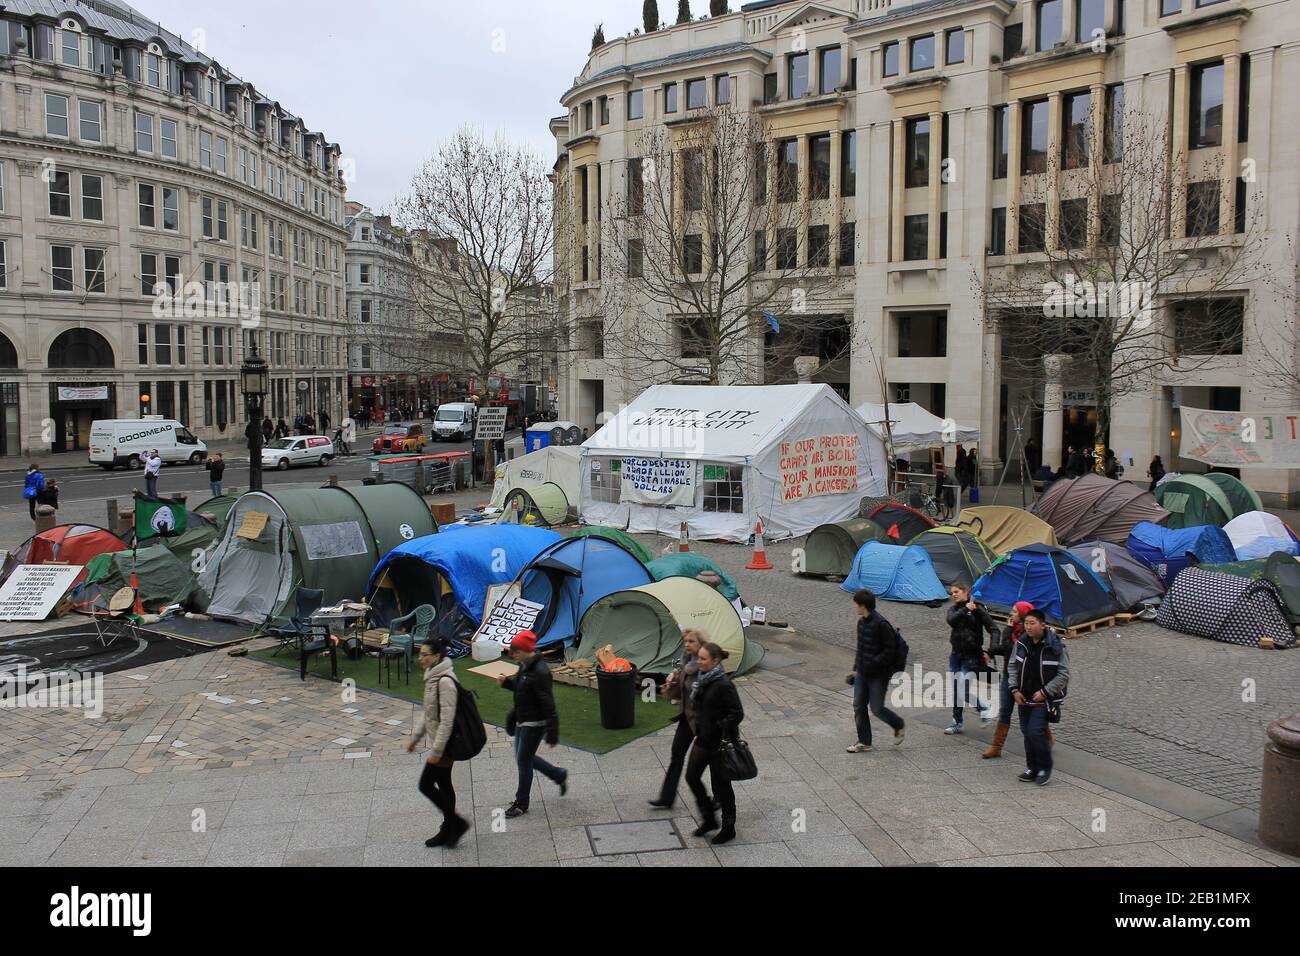 Personnes visitant le camp de mouvement Occupy London près de St pauls cathédrale de Londres Banque D'Images